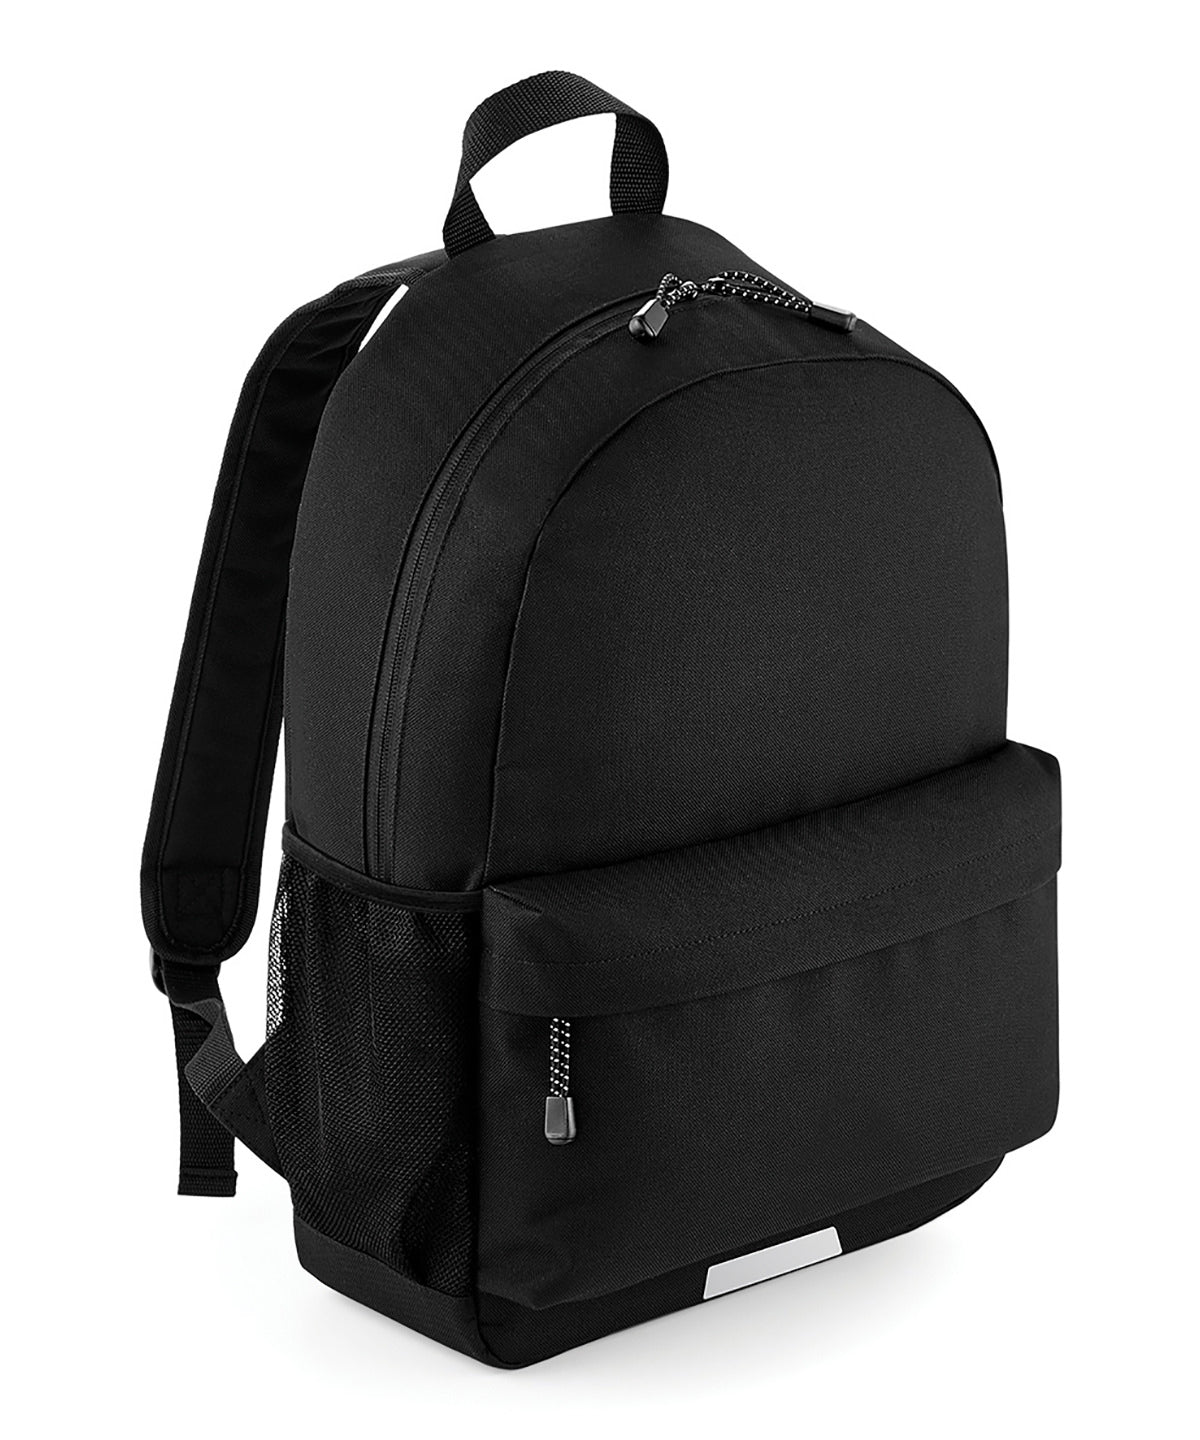 Töskur - Academy Backpack